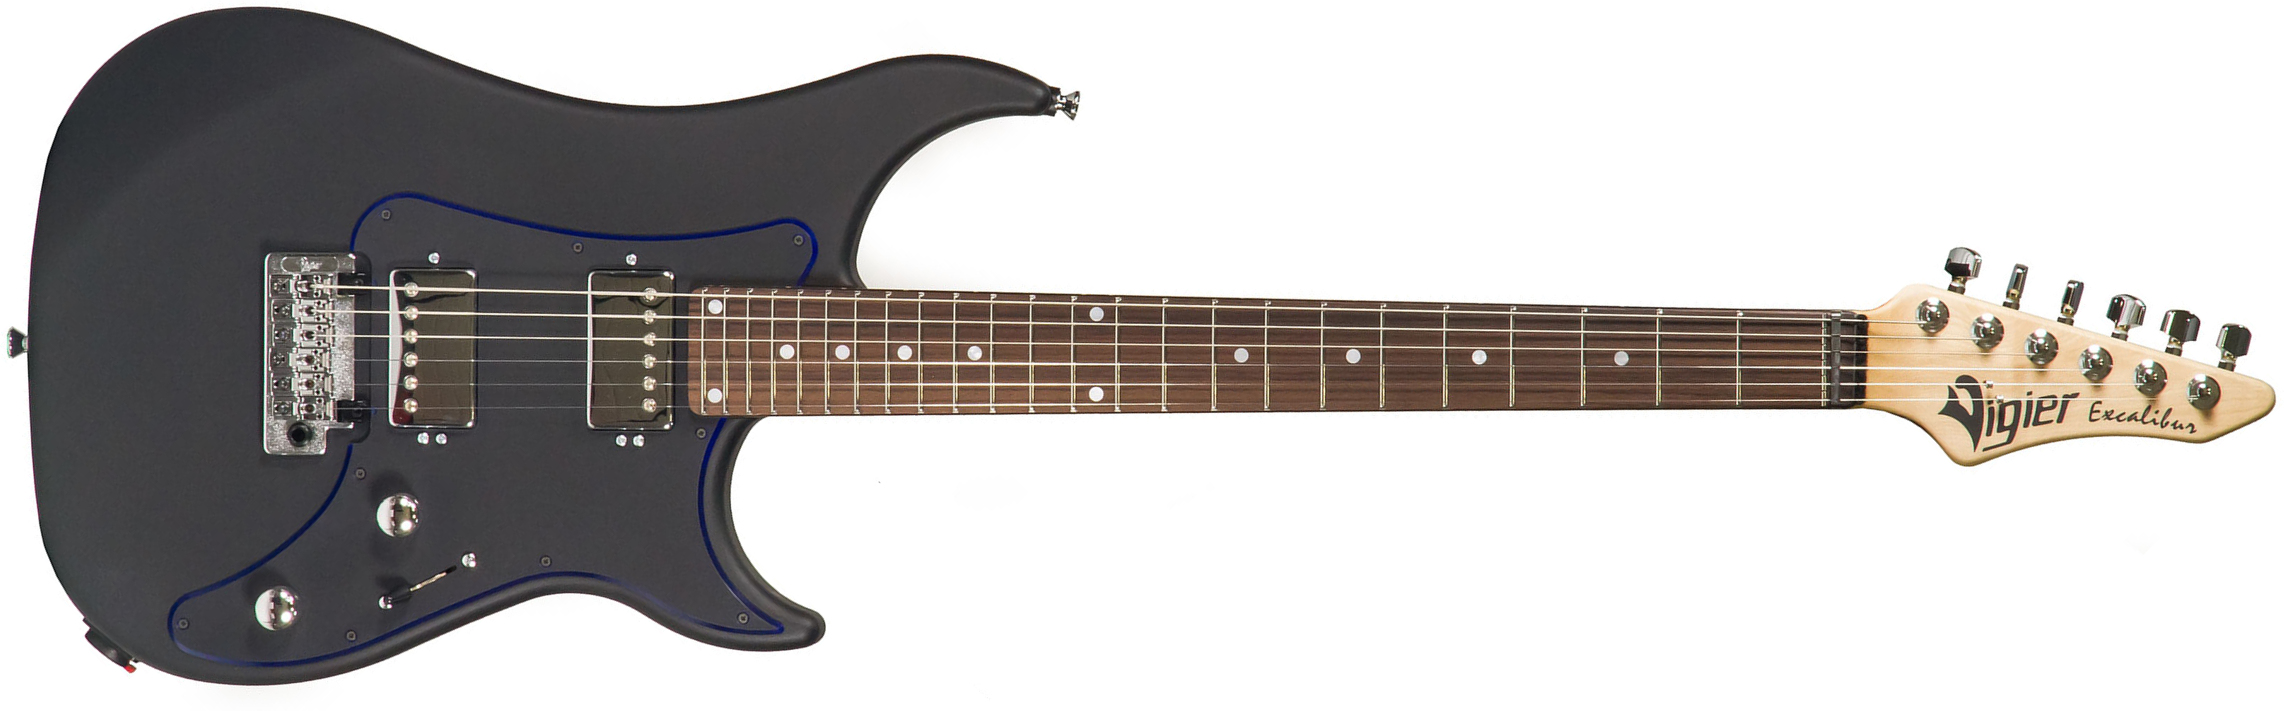 Vigier Excalibur Indus 2h Trem Rw - Textured Black - Str shape electric guitar - Main picture